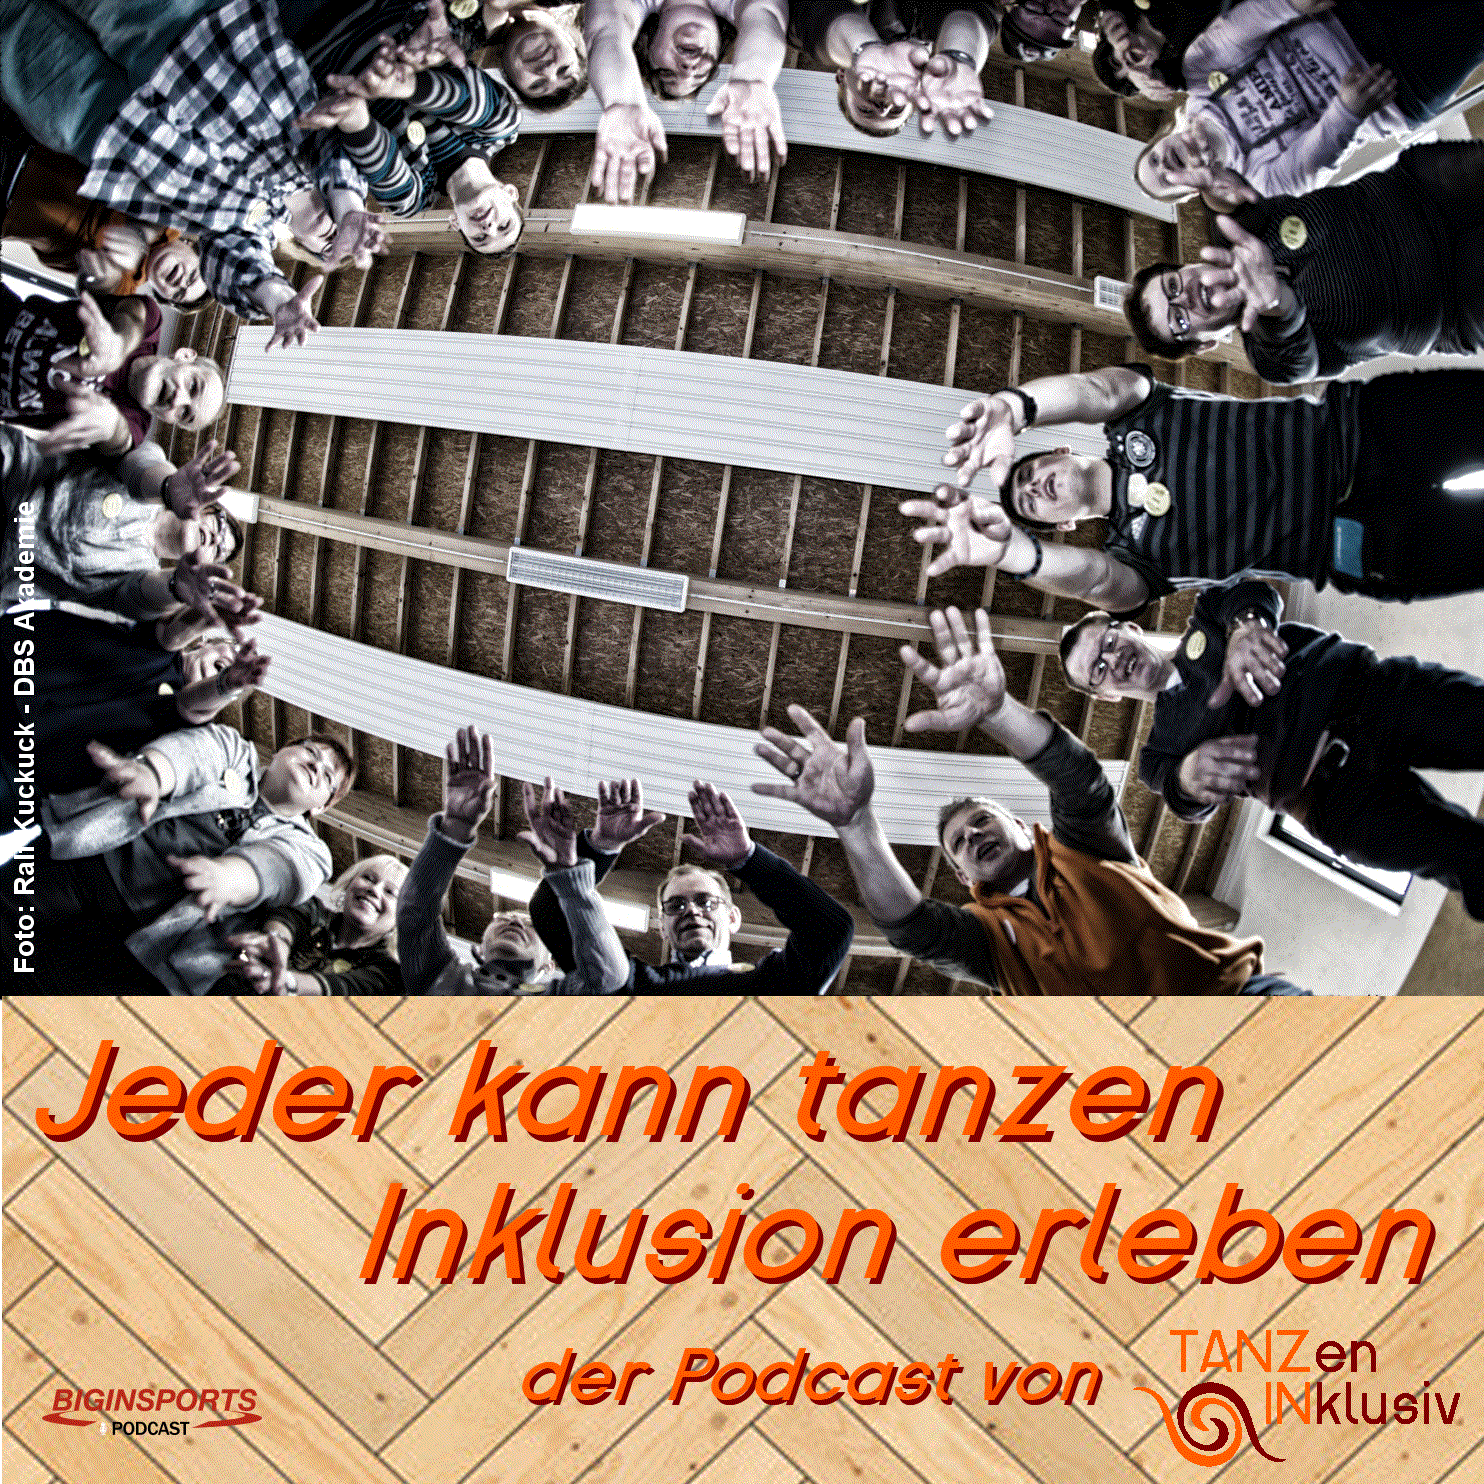 You are currently viewing Jeder kann tanzen Podcast – Vorstellung BSG Gummersbach